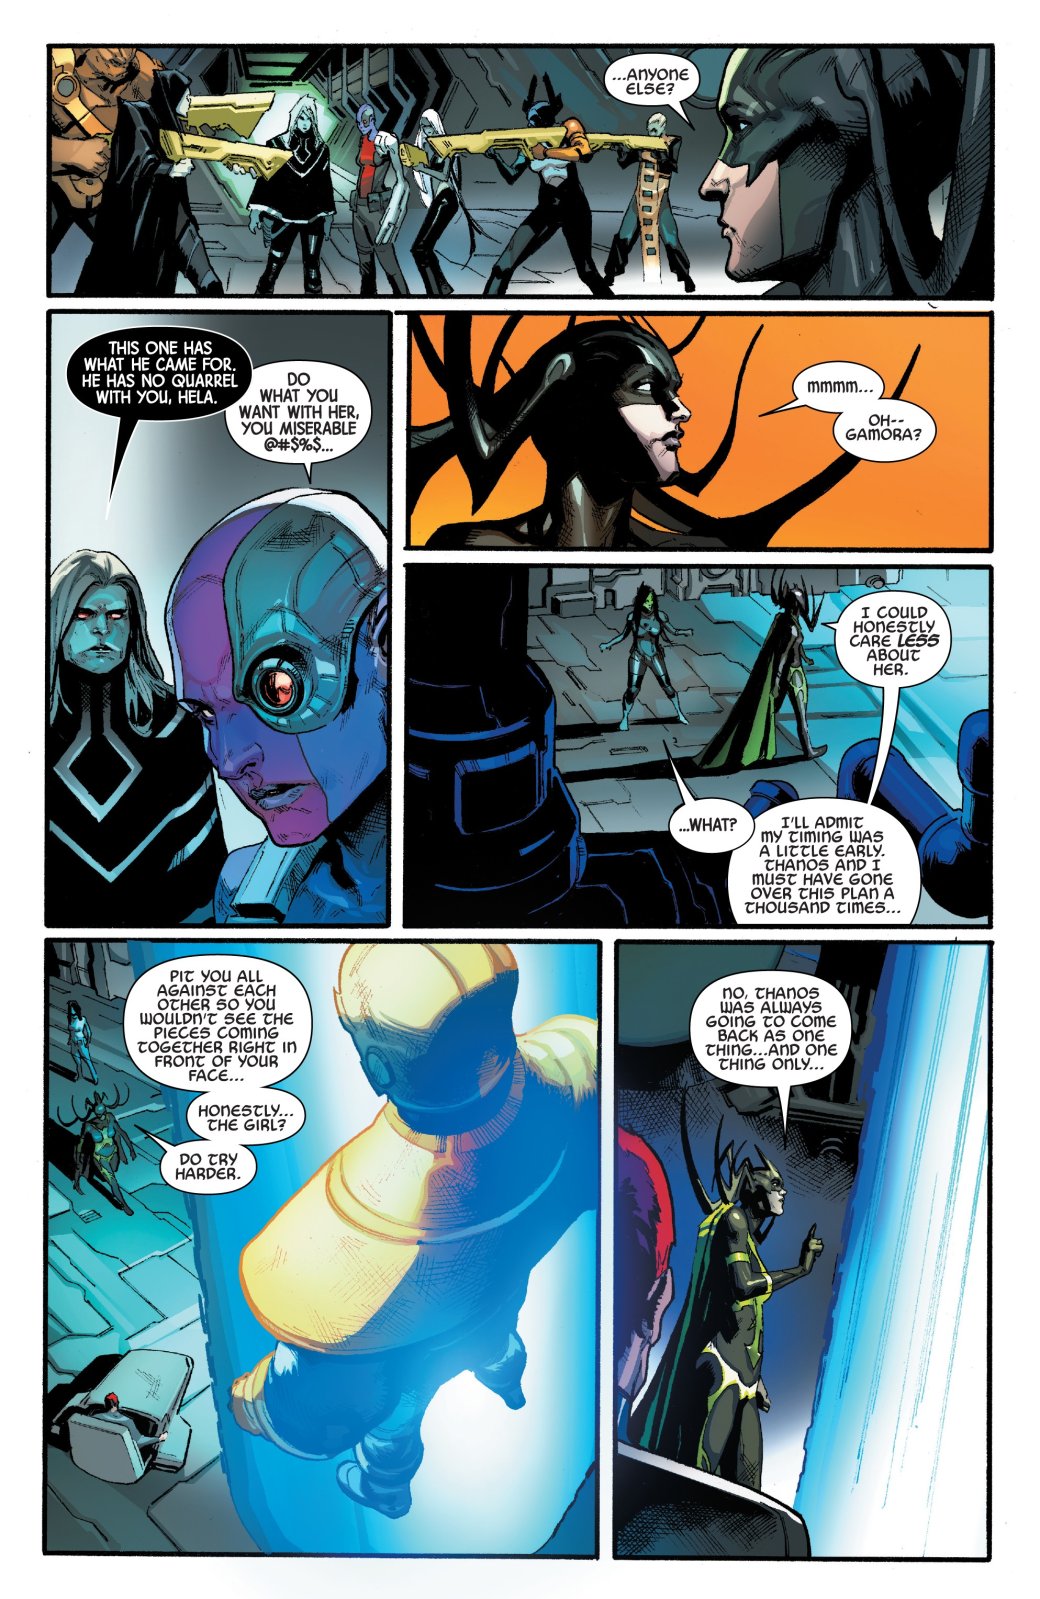 Галерея Как Хела сумела возродить своего возлюбленного Таноса на страницах комиксов Marvel? - 4 фото